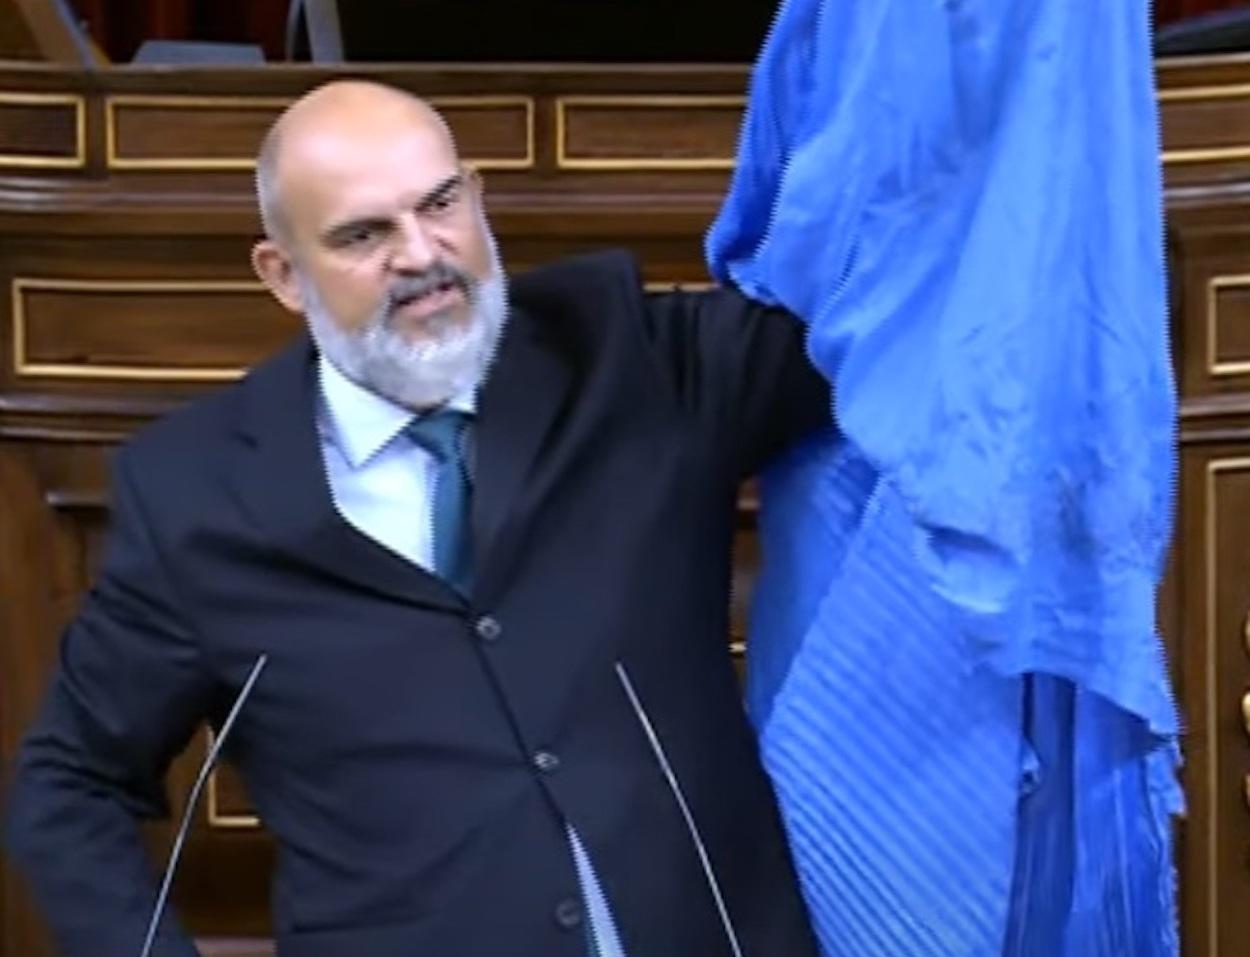 El diputado de Vox Víctor Sánchez del Real exhibe un burka en el hemiciclo del Congreso